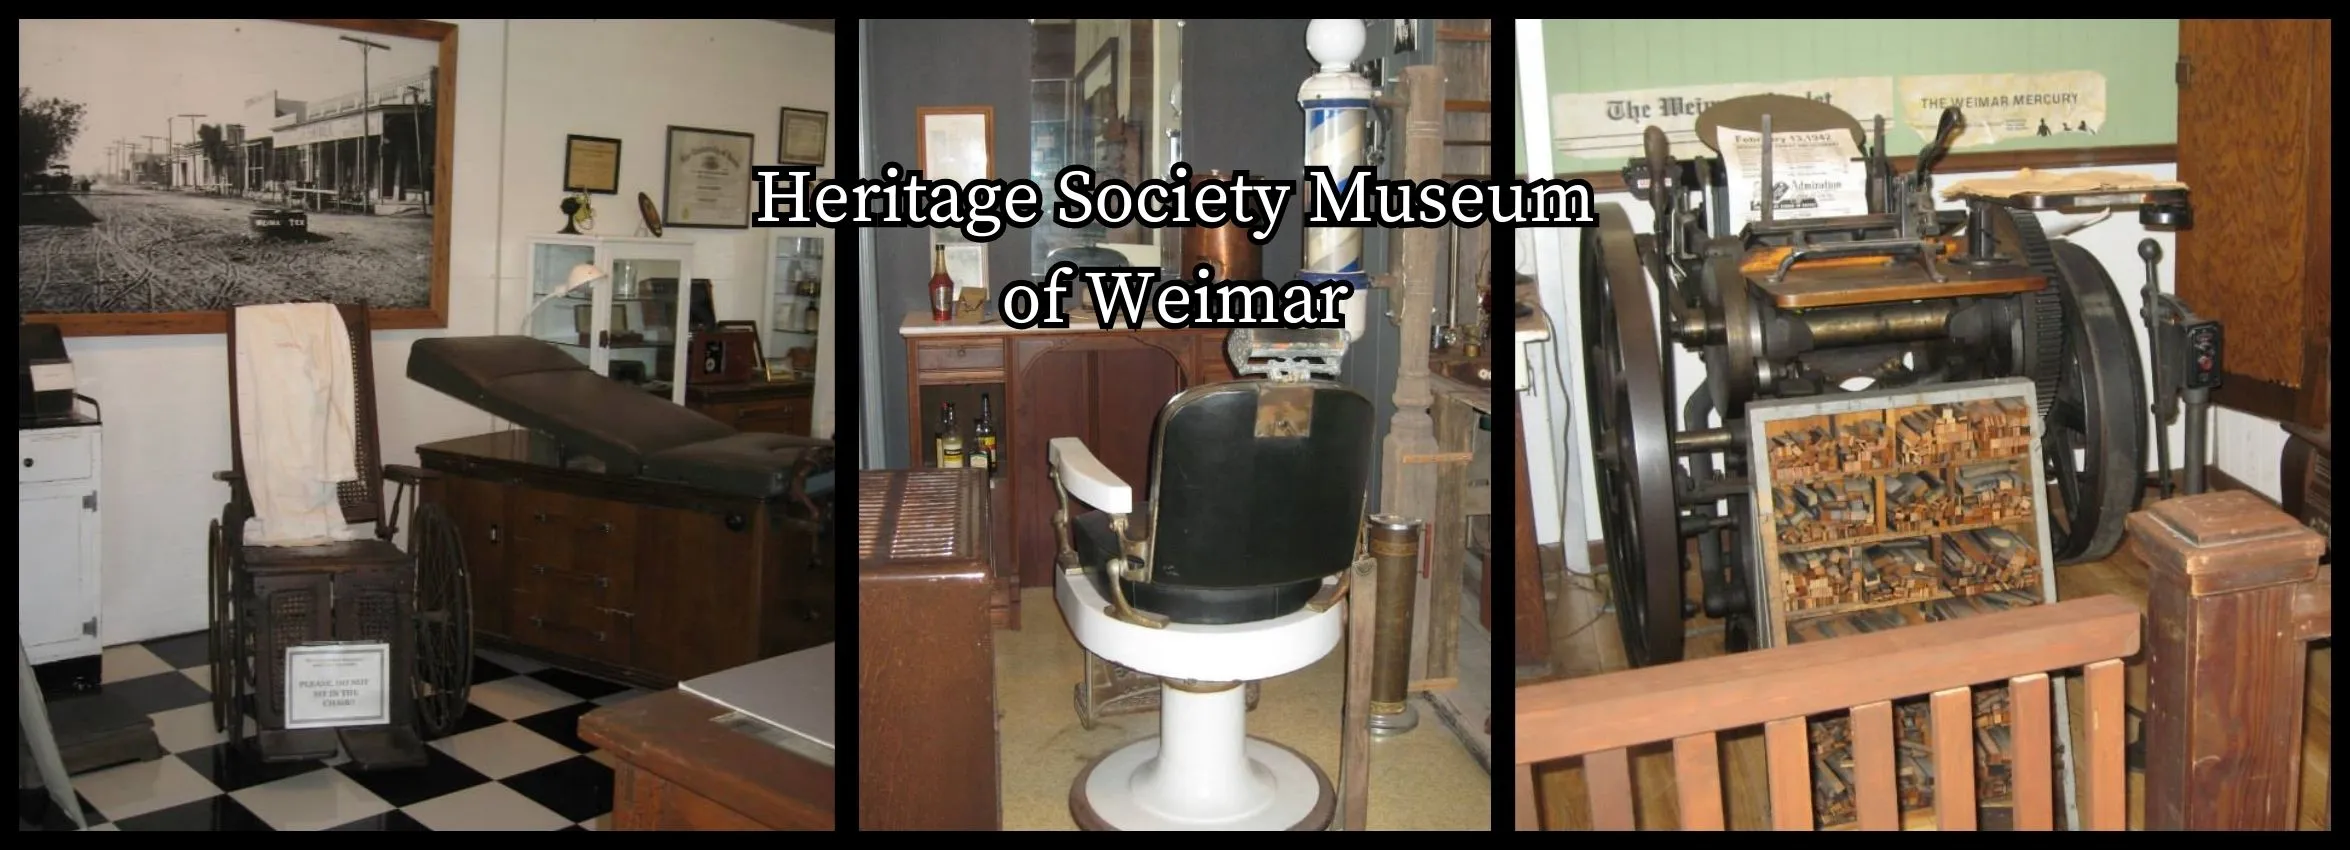 Heritage-Society-Museum-of-Weimar_Desktop_ET